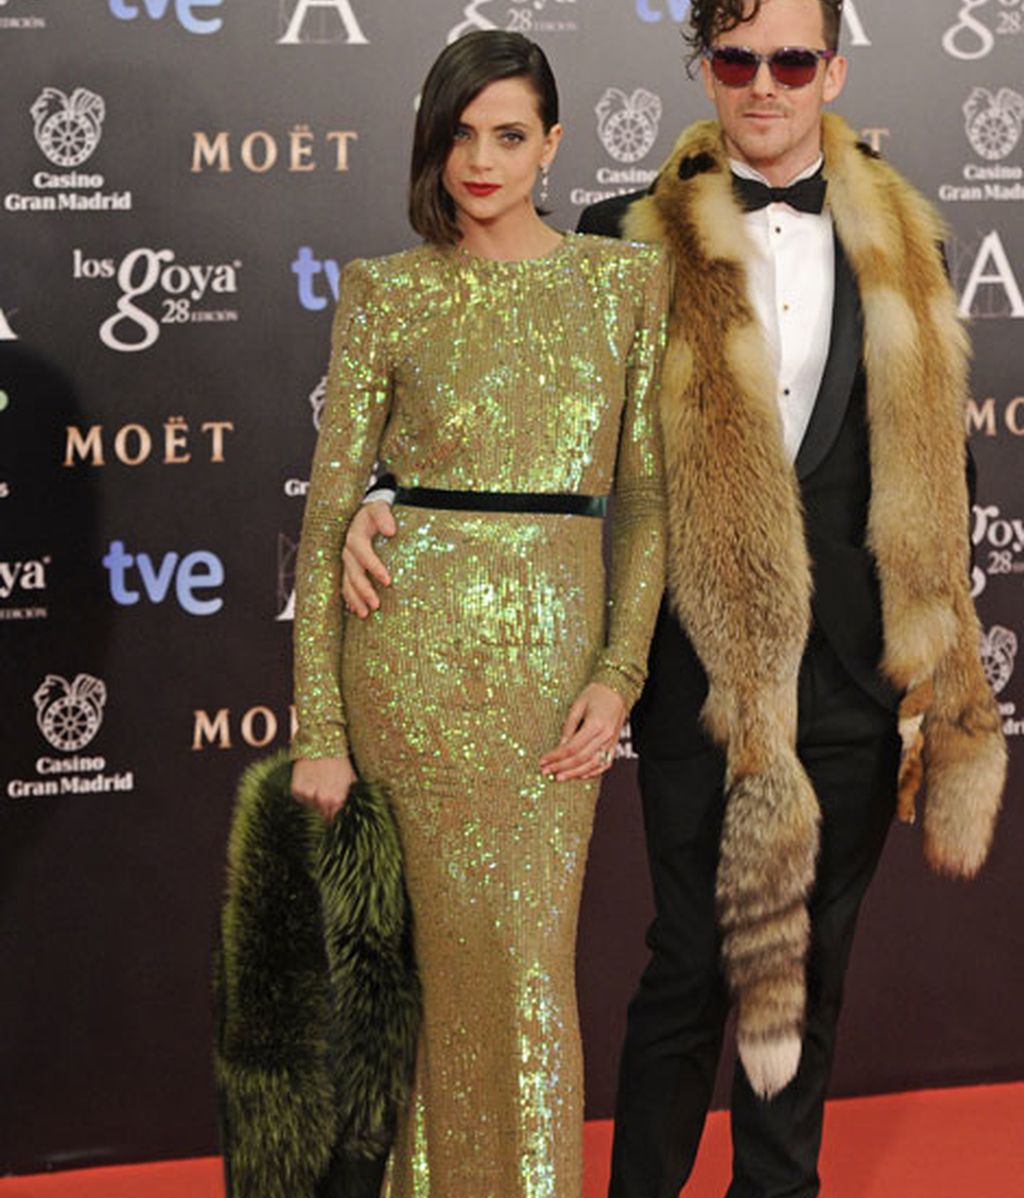 Vestidos de cola y escotazos, protagonistas de la alfombra roja de los premios Goya